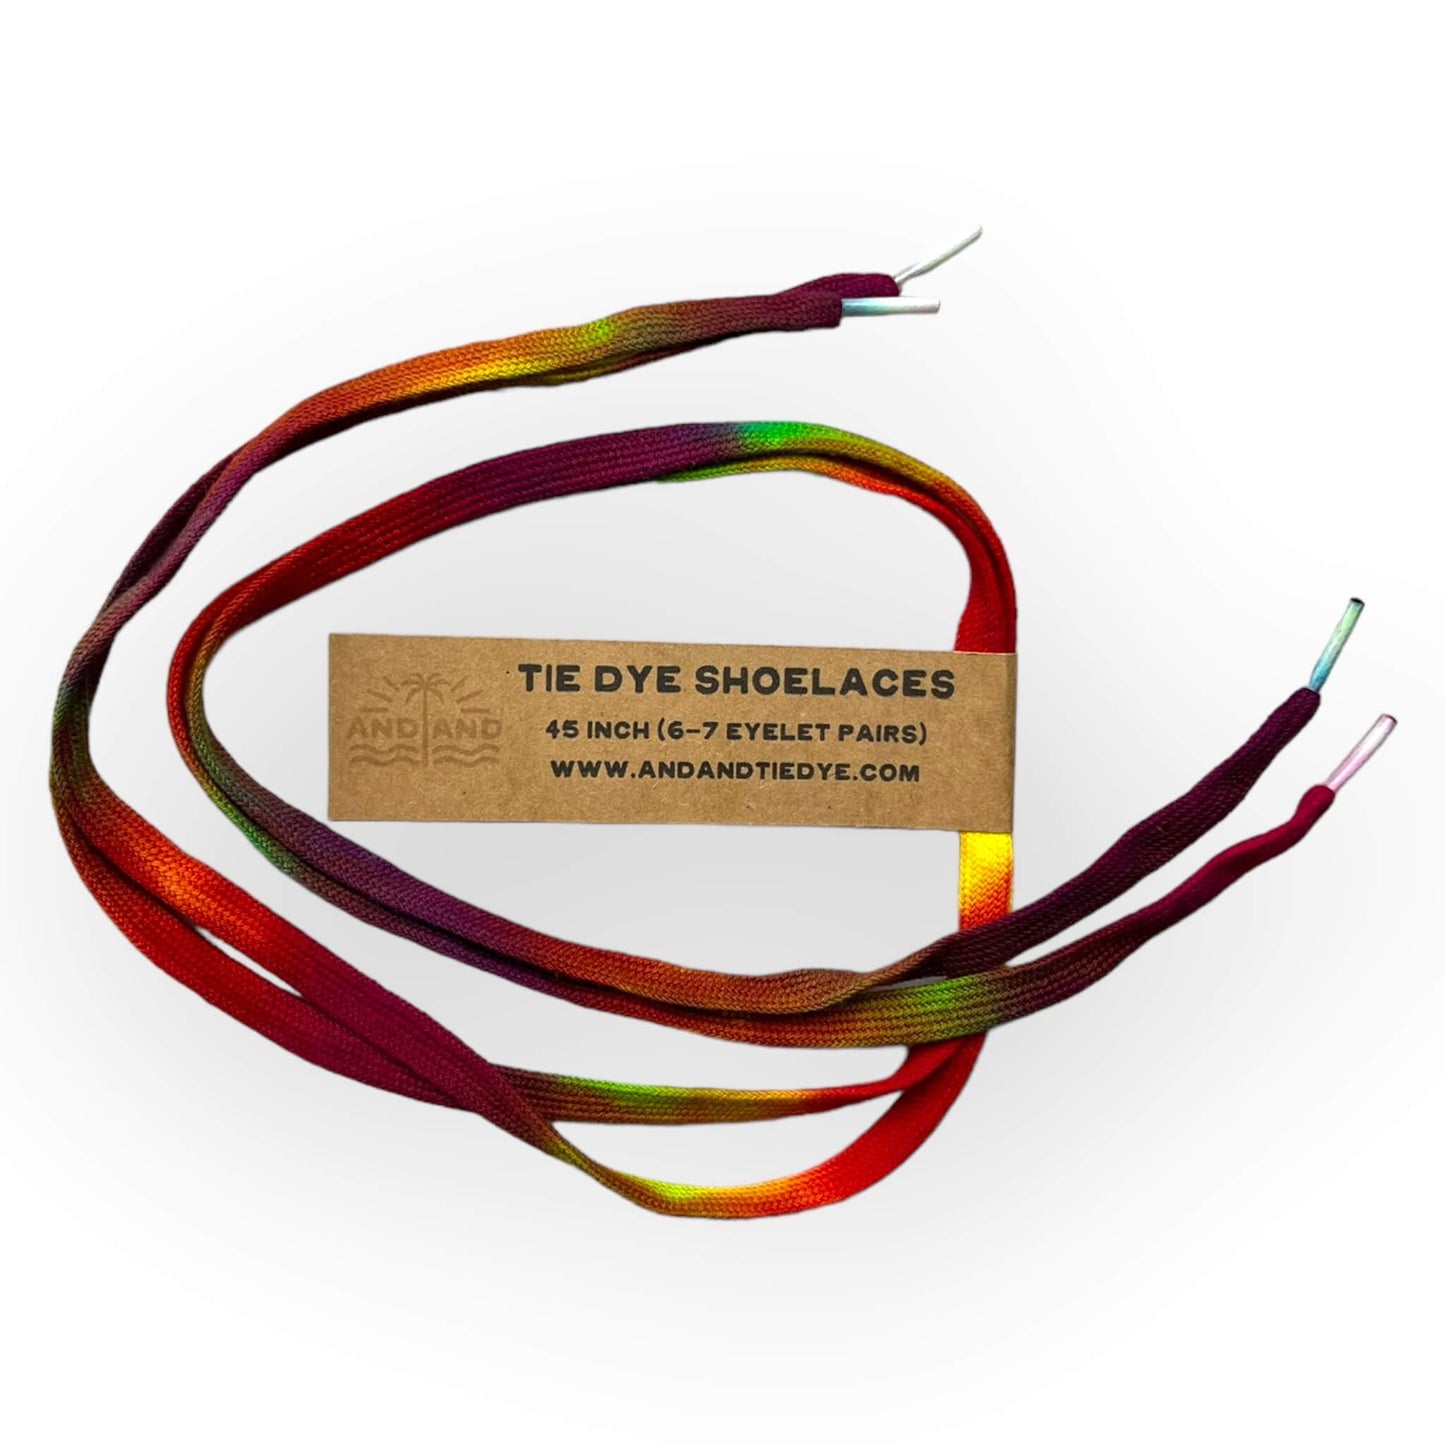 Tie Dye Shoelaces - 45inch